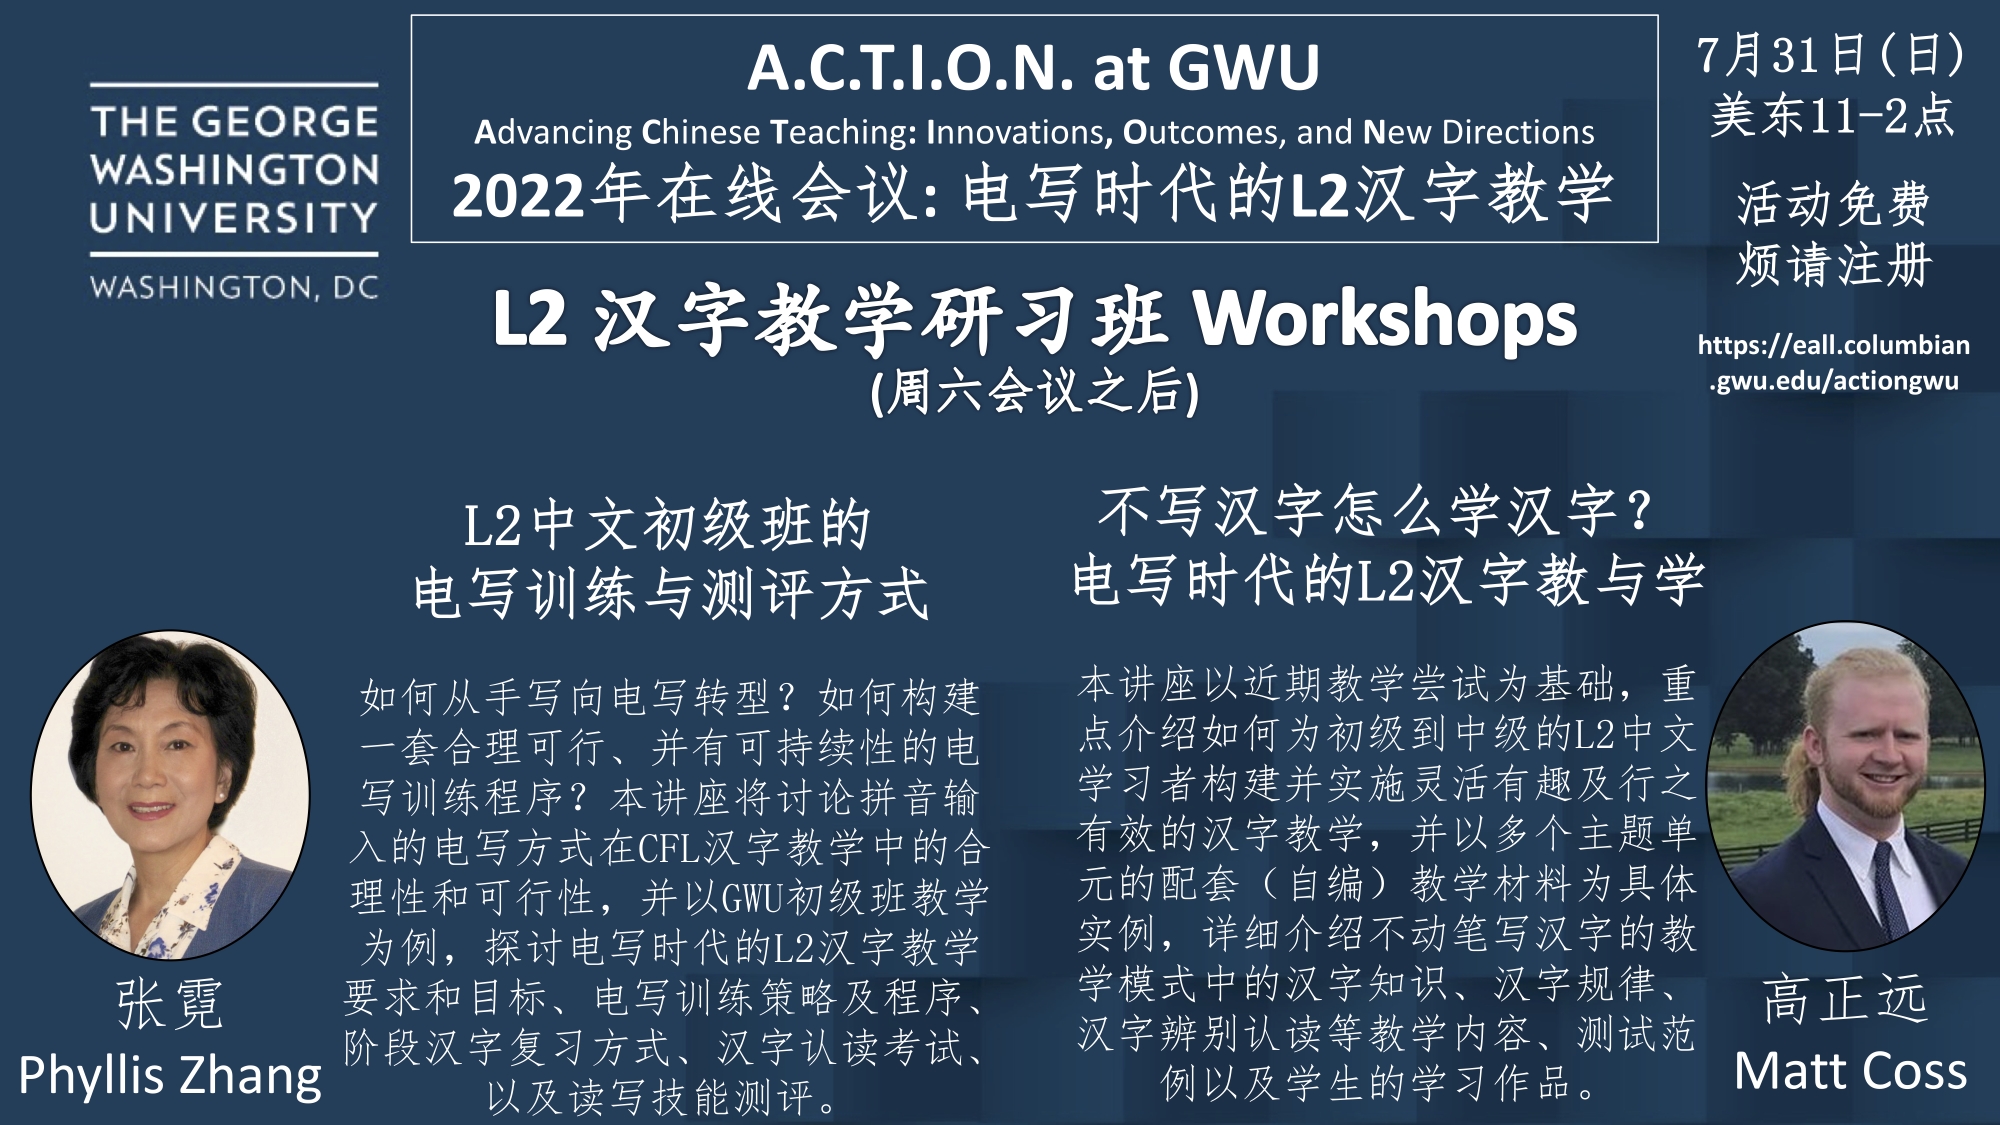 Workshop information